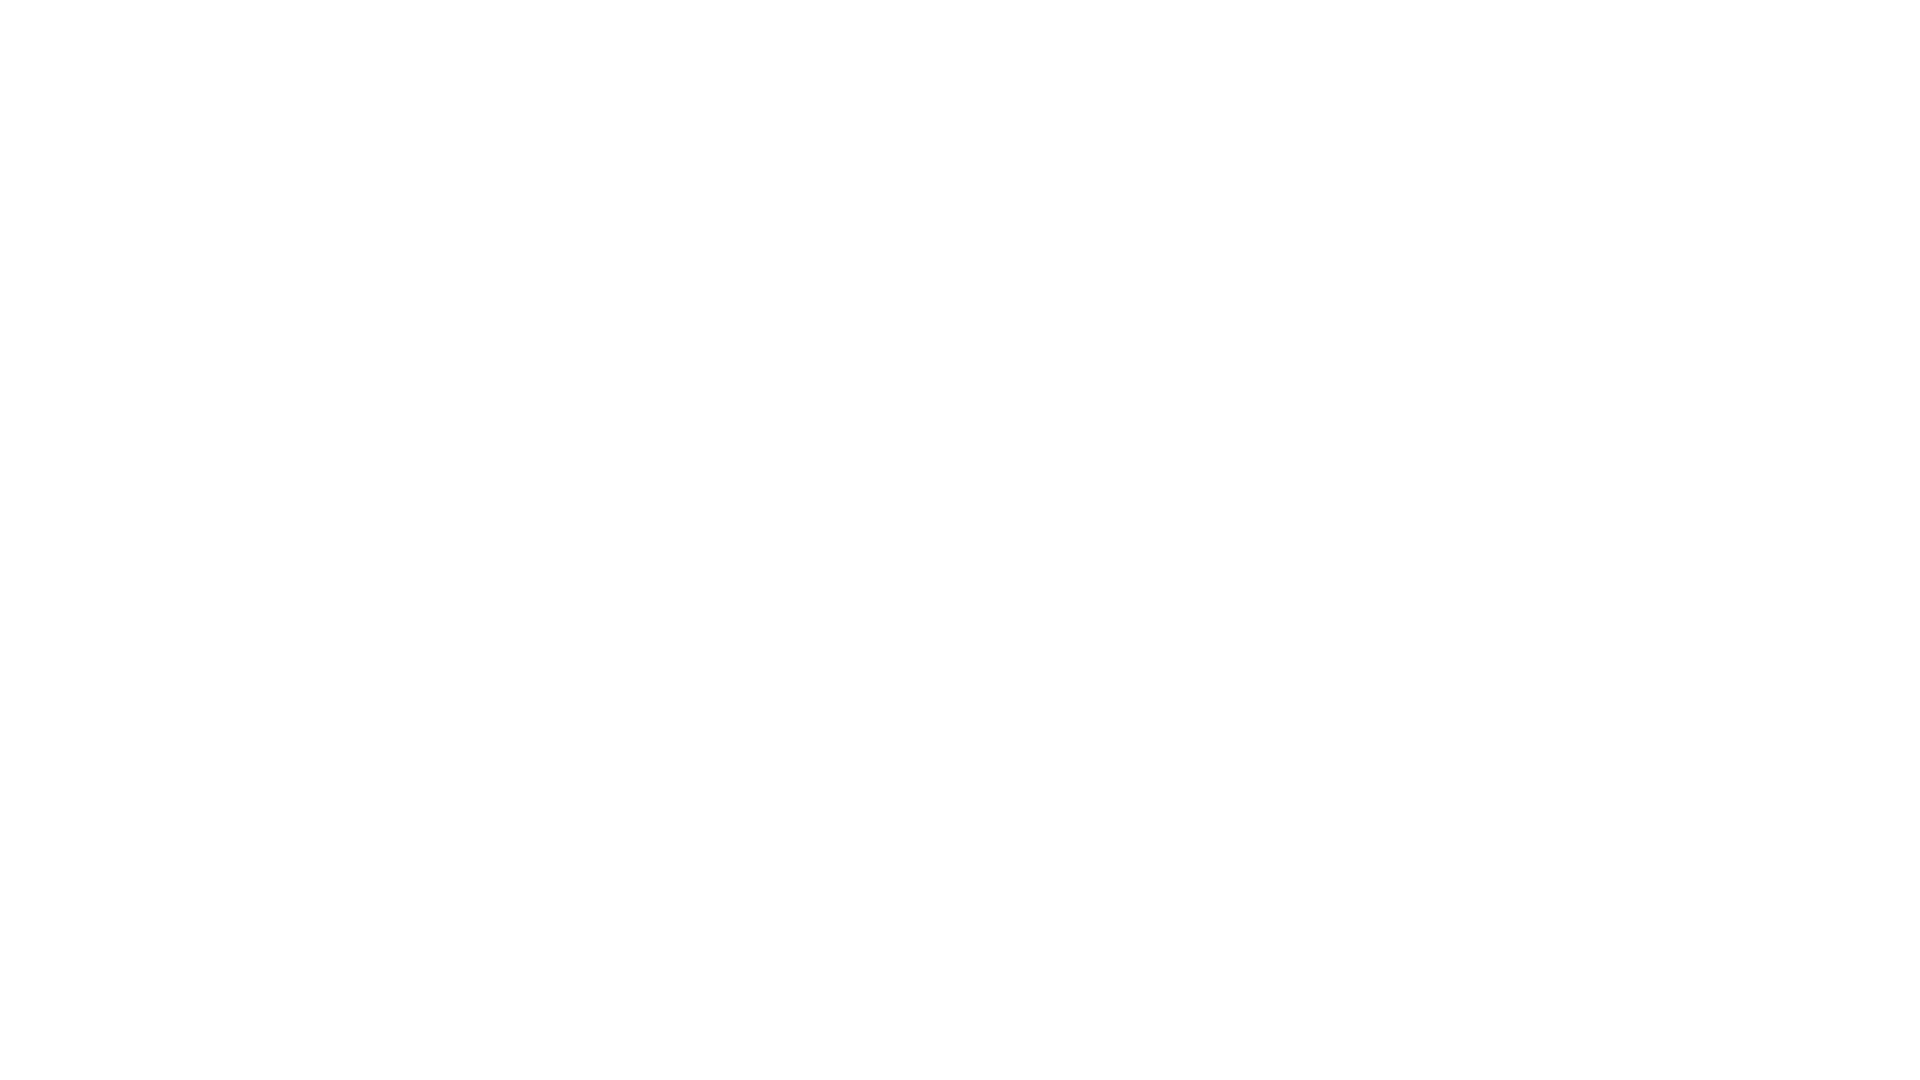 Pierre Froger - Vidéaste & Pilote de Drone | Loire-Atlantique | Paris